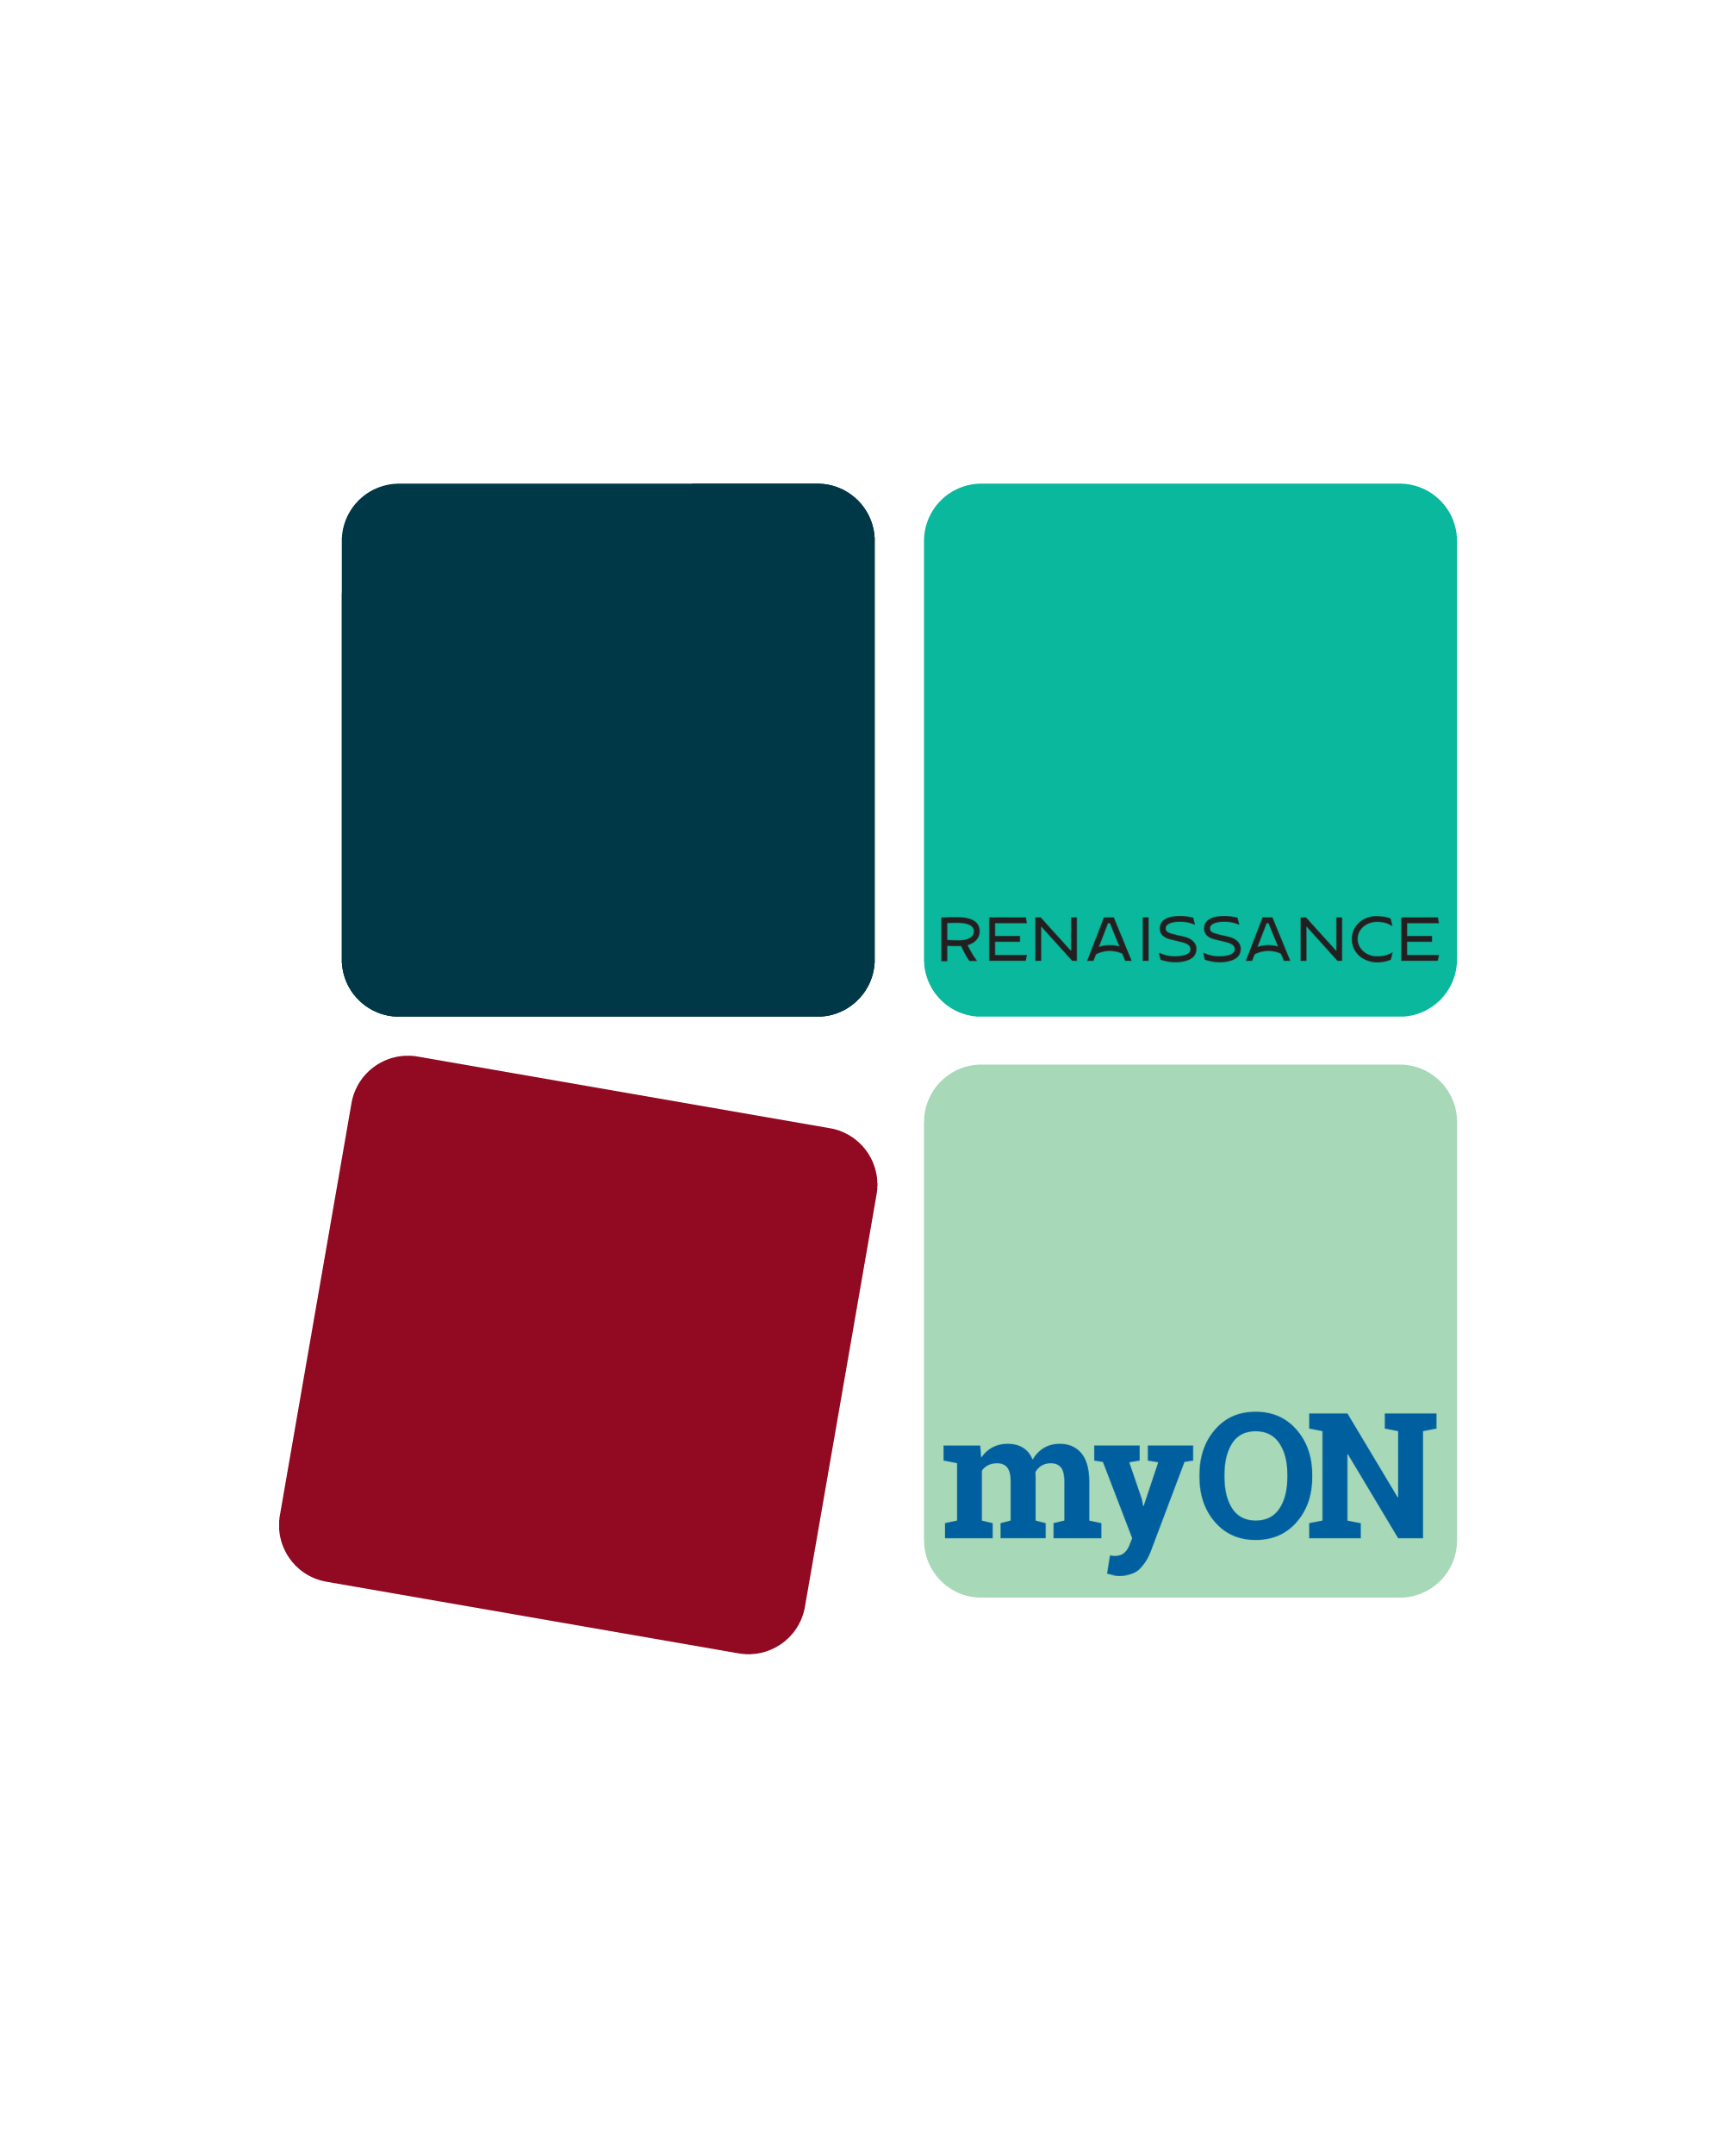 myon_logo.png